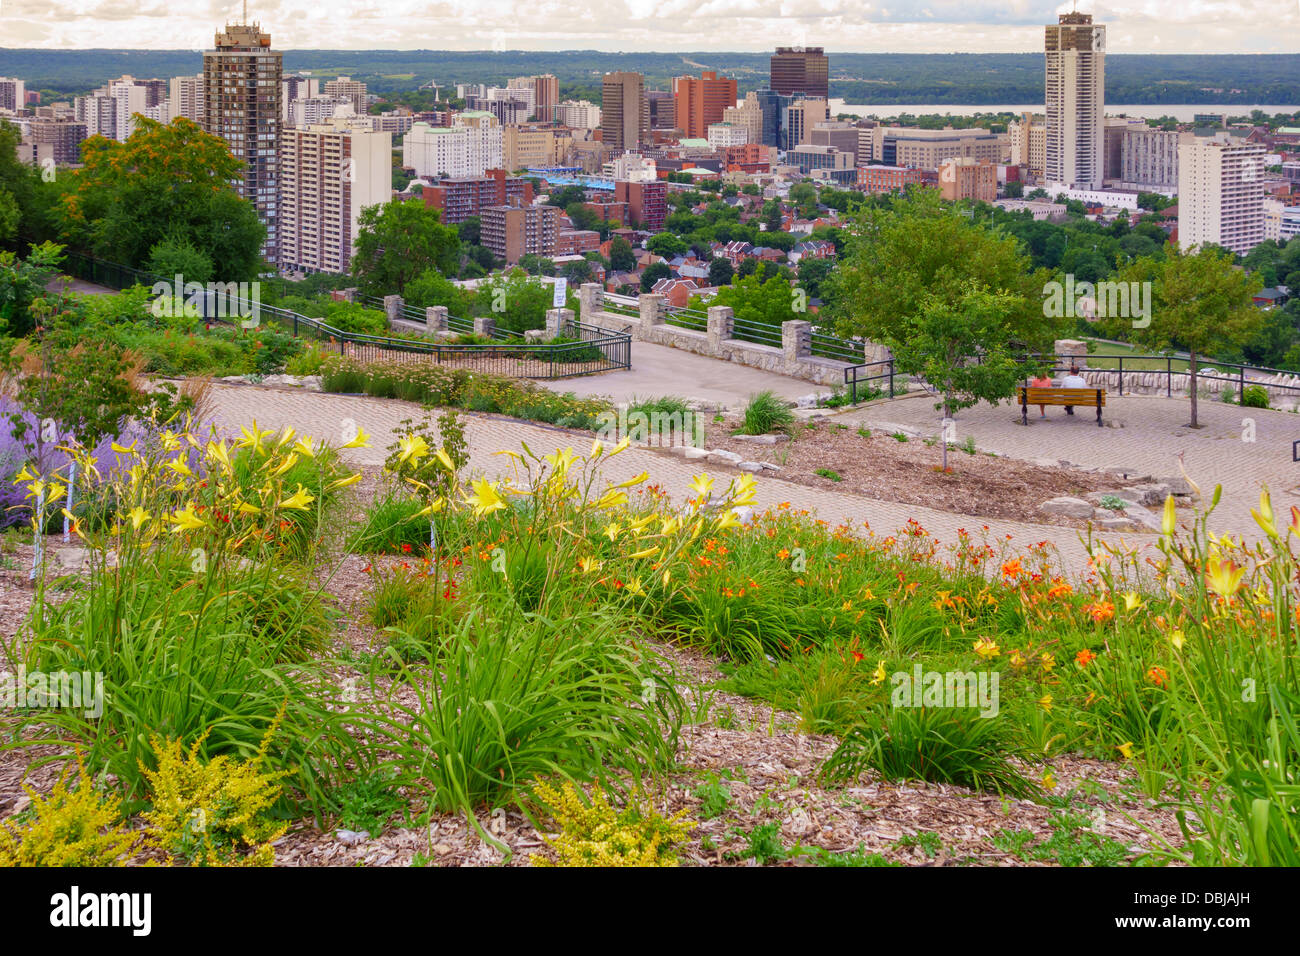 View of downtown Hamilton, Ontario, Canada Stock Photo